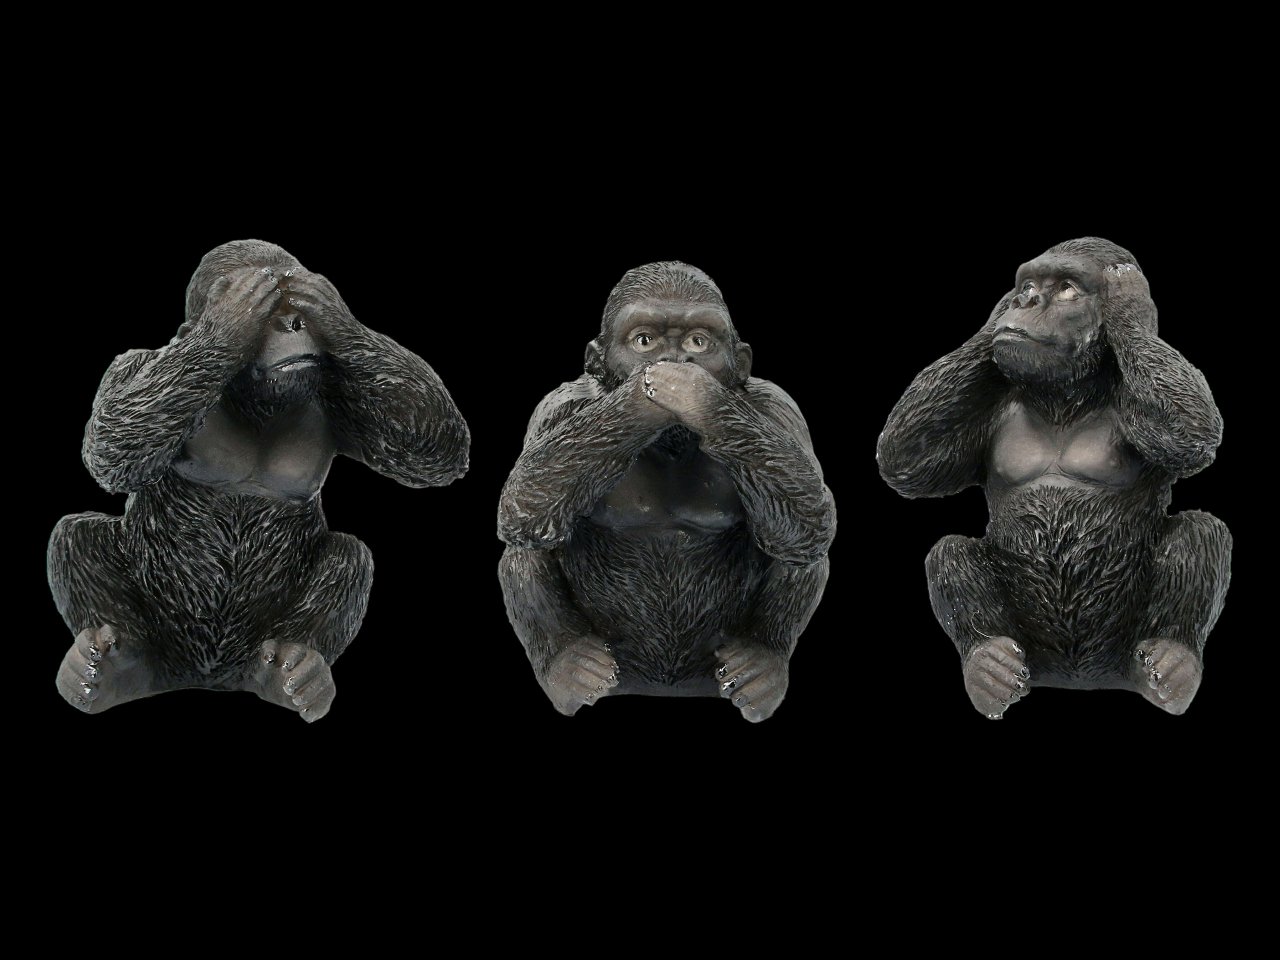 Drei weise Gorillas Figuren - Nichts böses